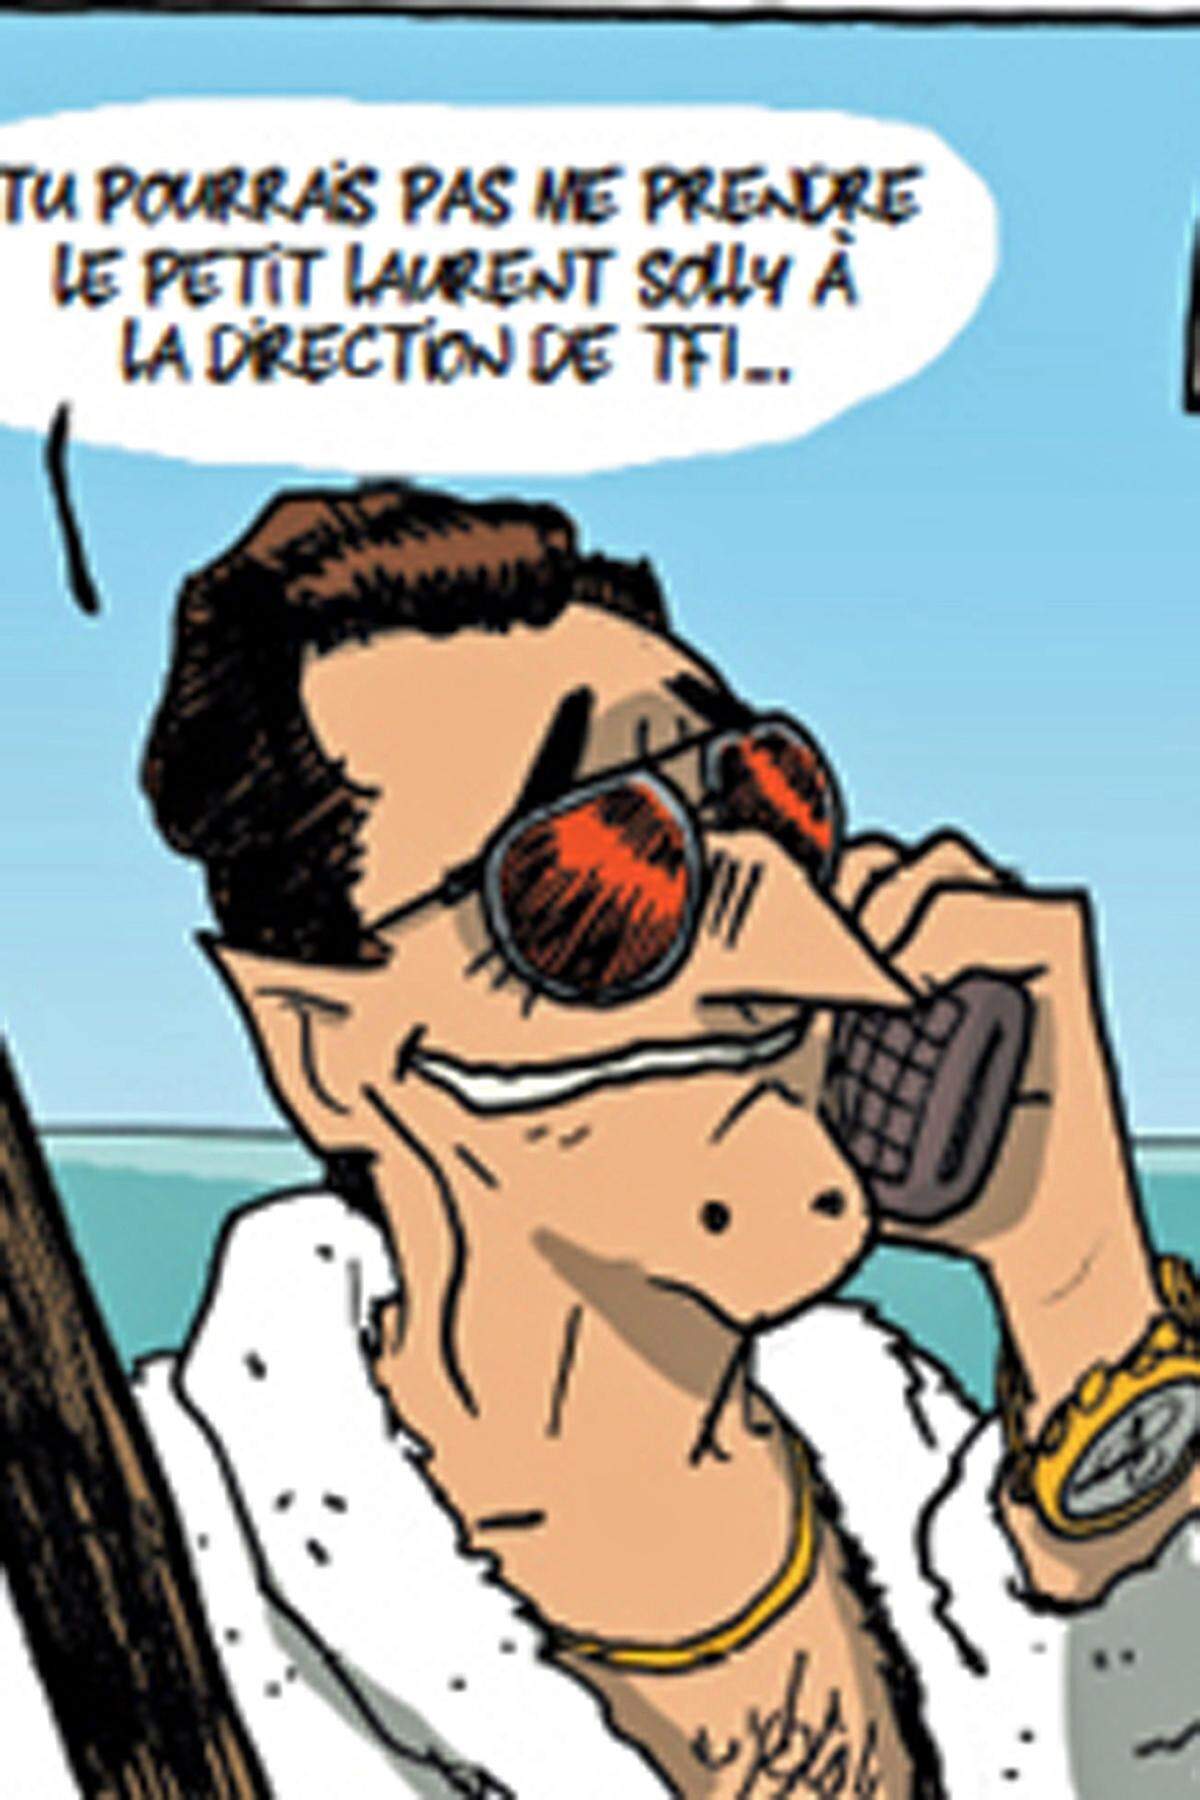 In einem anderen Comic karikiert der französische Journalist Renaud Dély die Wichtigtuerei des Staatsmannes. In „Sarkozy und die Reichen“ wird von der engen Verbindung zwischen dem Präsidenten und seinen Geldgebern – Bankern, Medienmogulen und der L’Oreal-Erbin Liliane Bettencourt – erzählt. Die der Politiker natürlich „im Dienste der Republik“ und nicht für sich anpumpt. (hell)